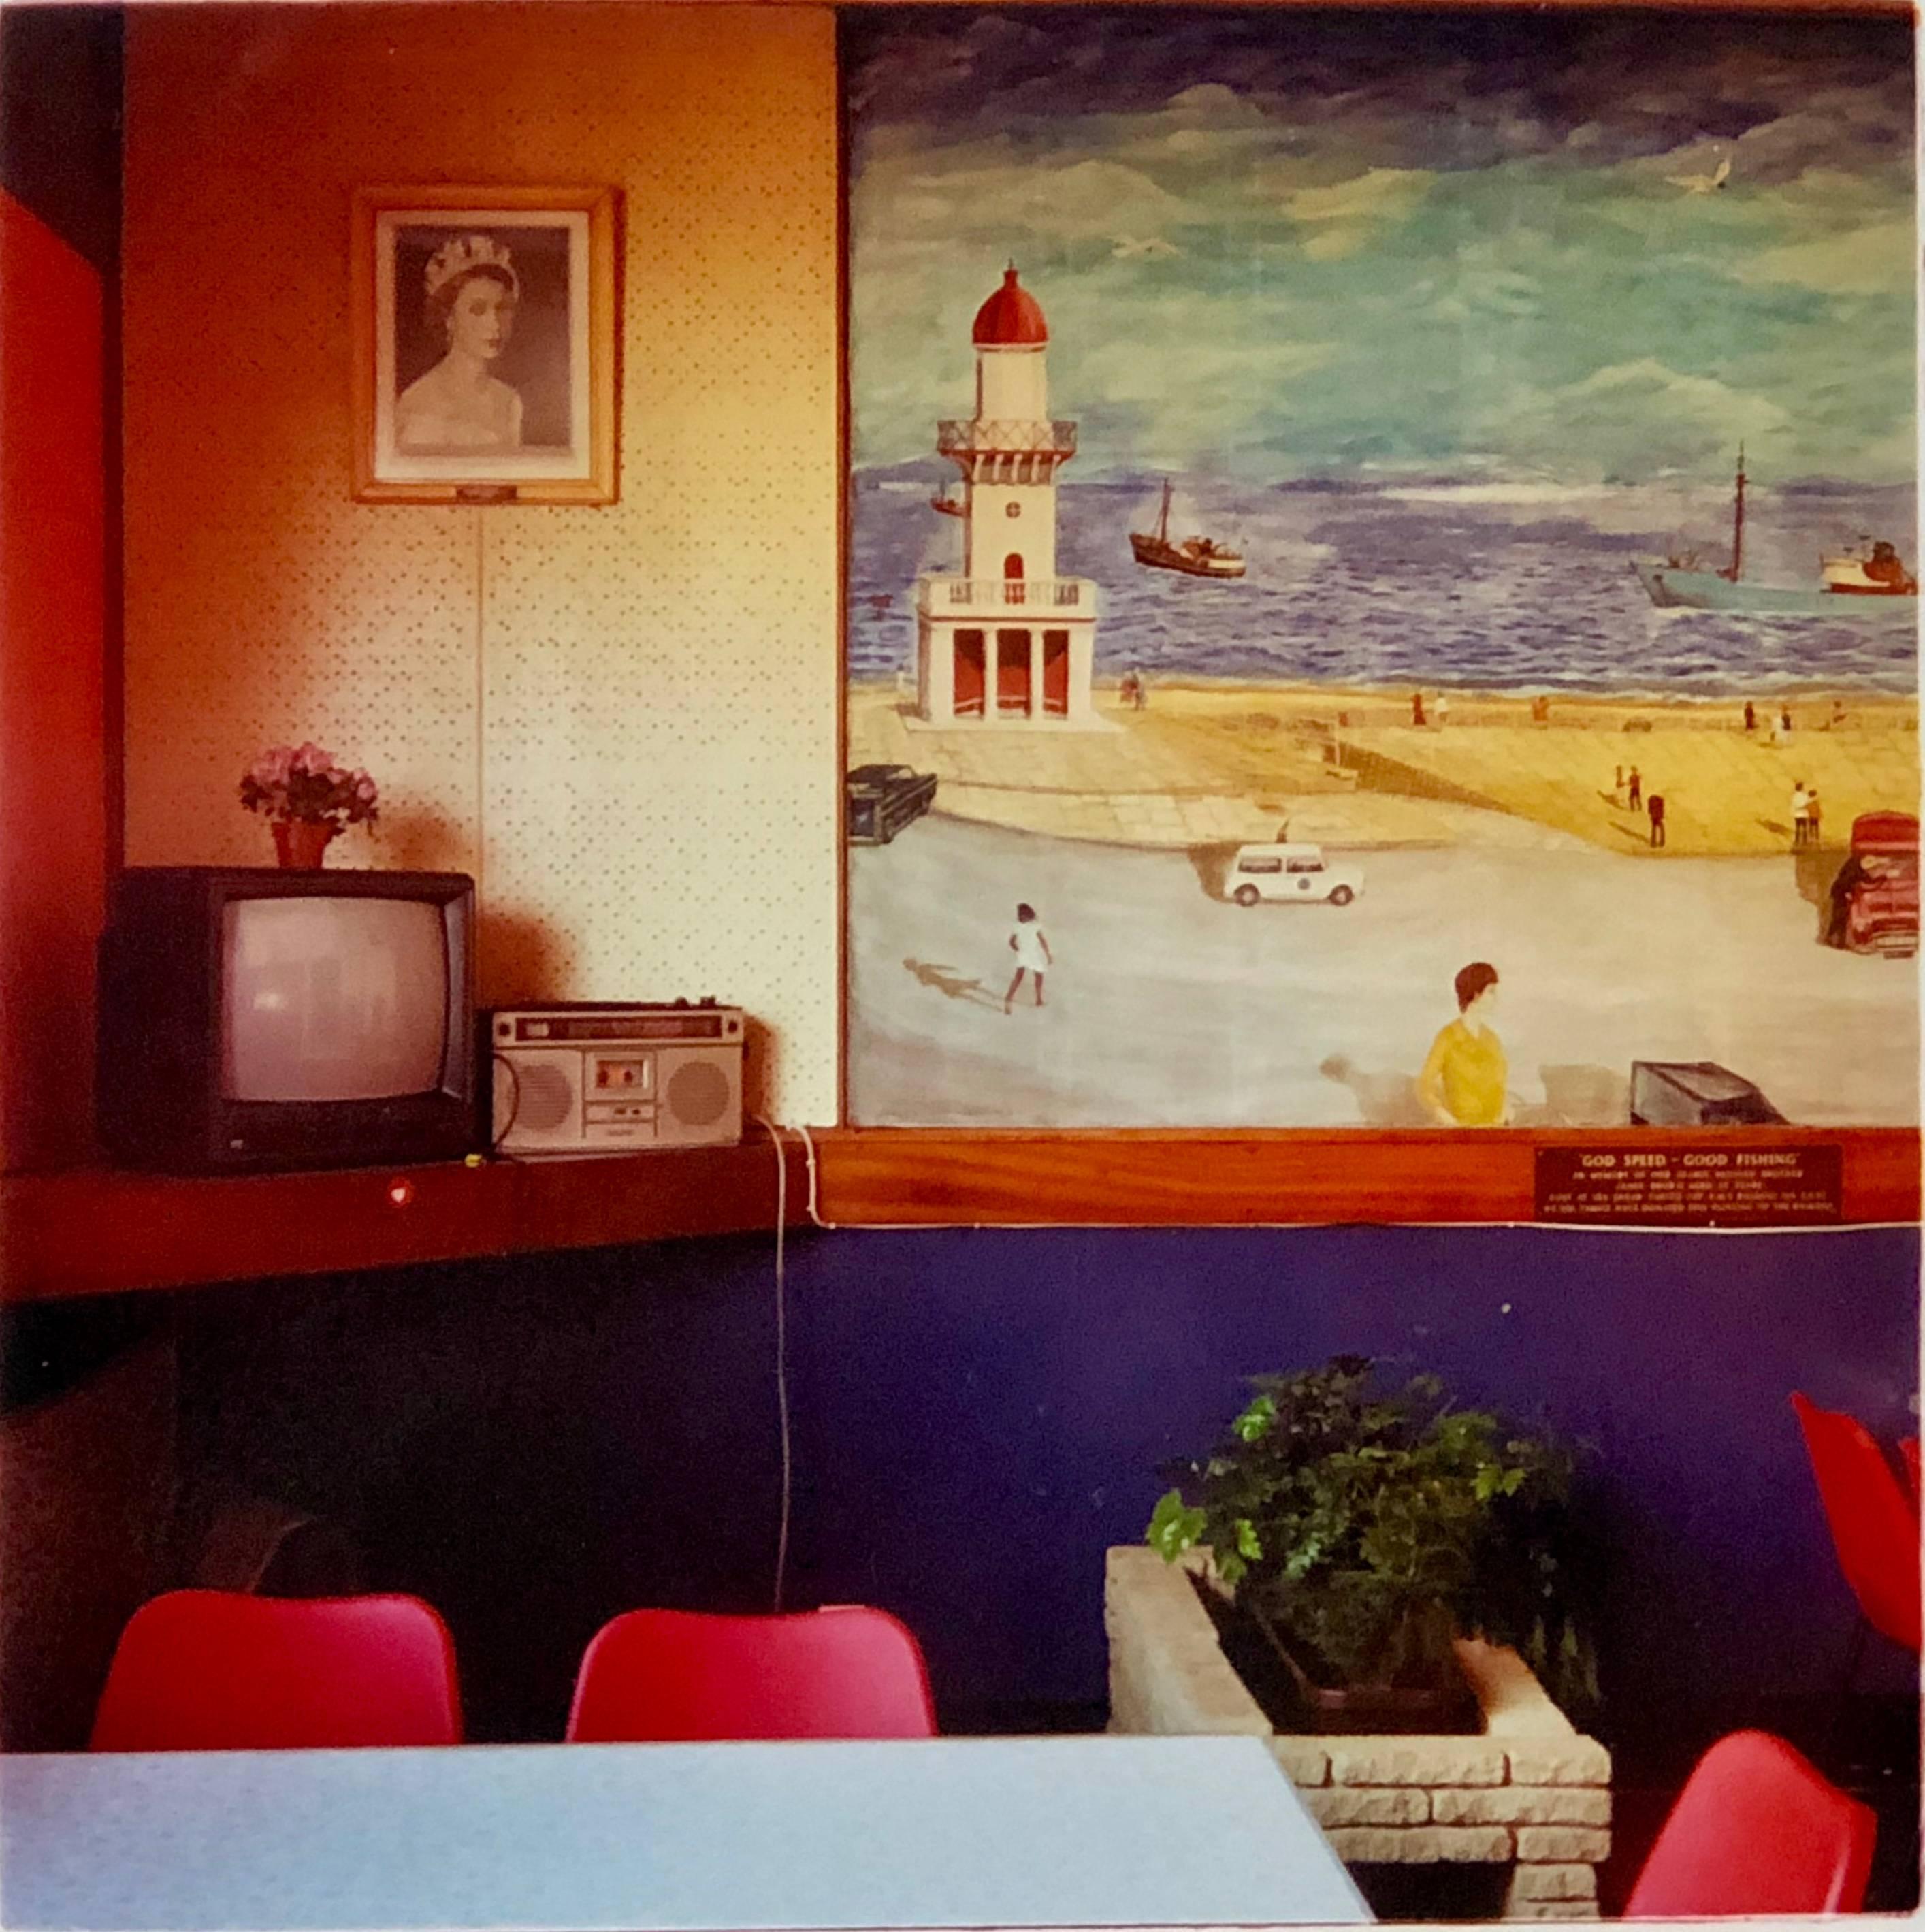 Color Photograph Richard Heeps - Fisherman's Mission II, Fleetwood - Photographie d'intérieur en couleur vintage britannique